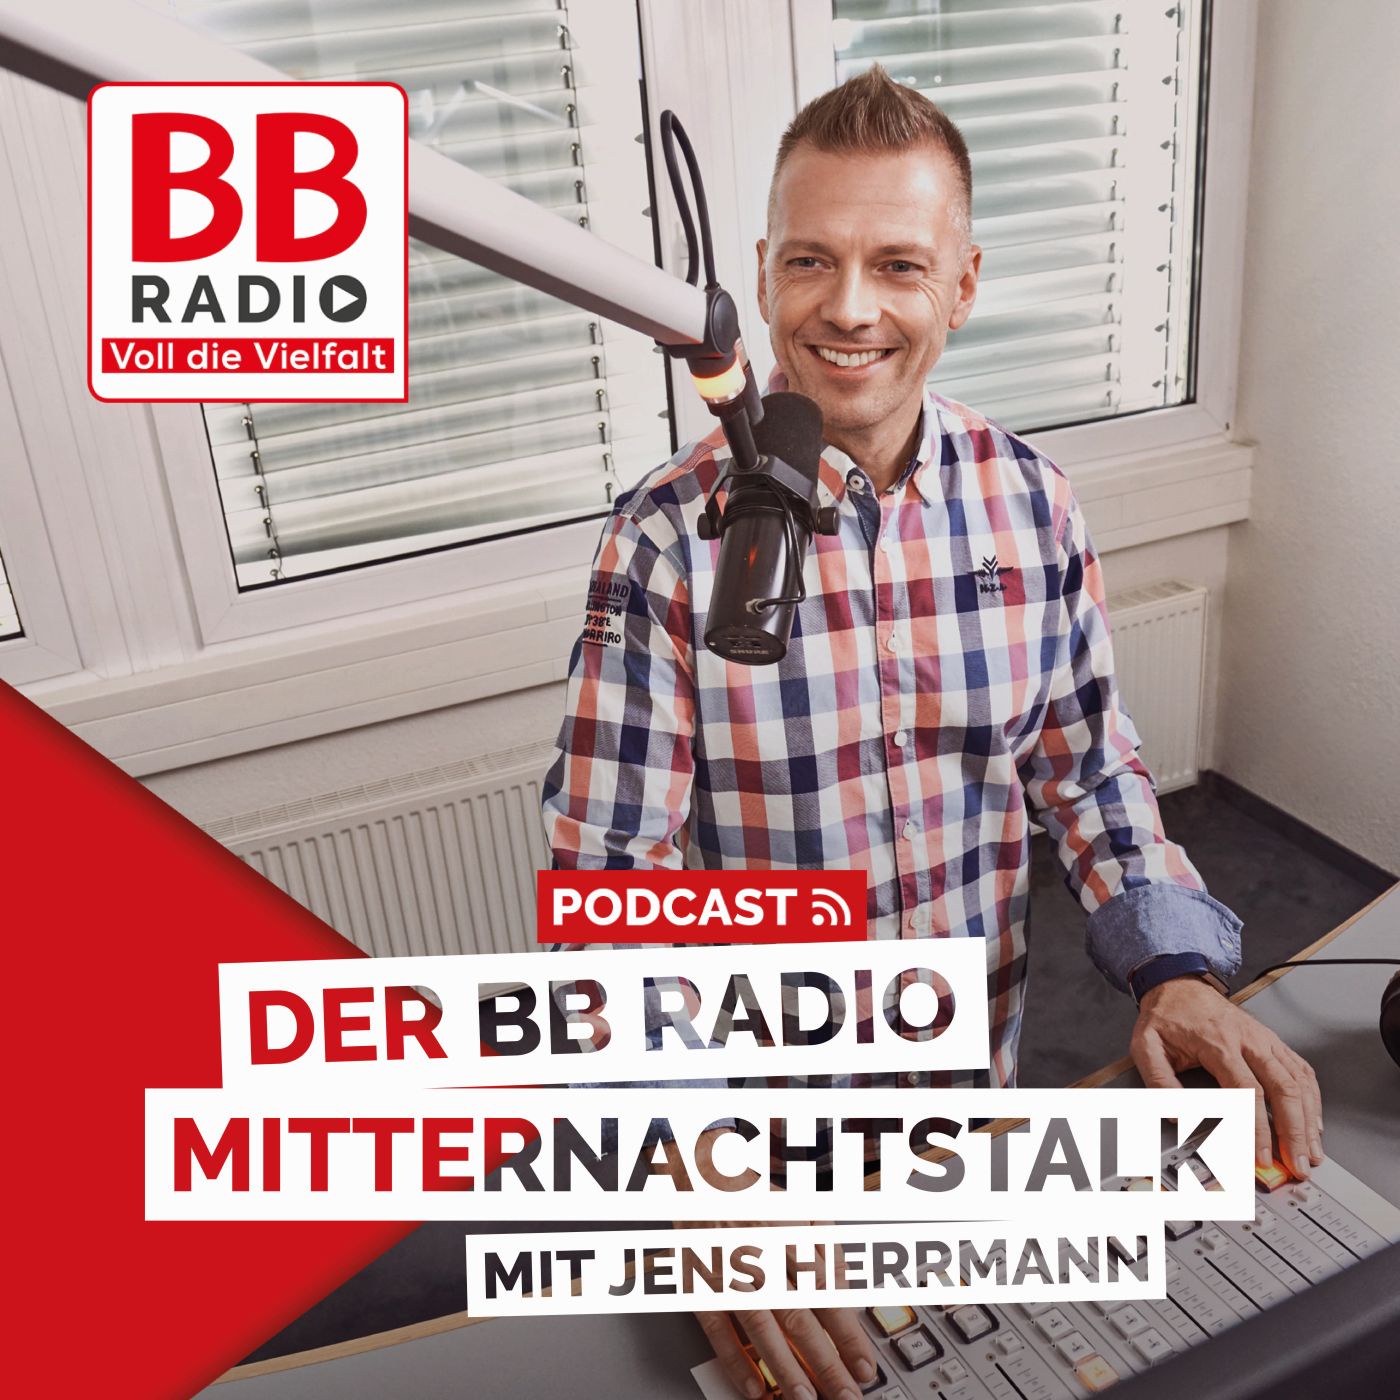 Der BB RADIO Mitternachtstalk Podcast